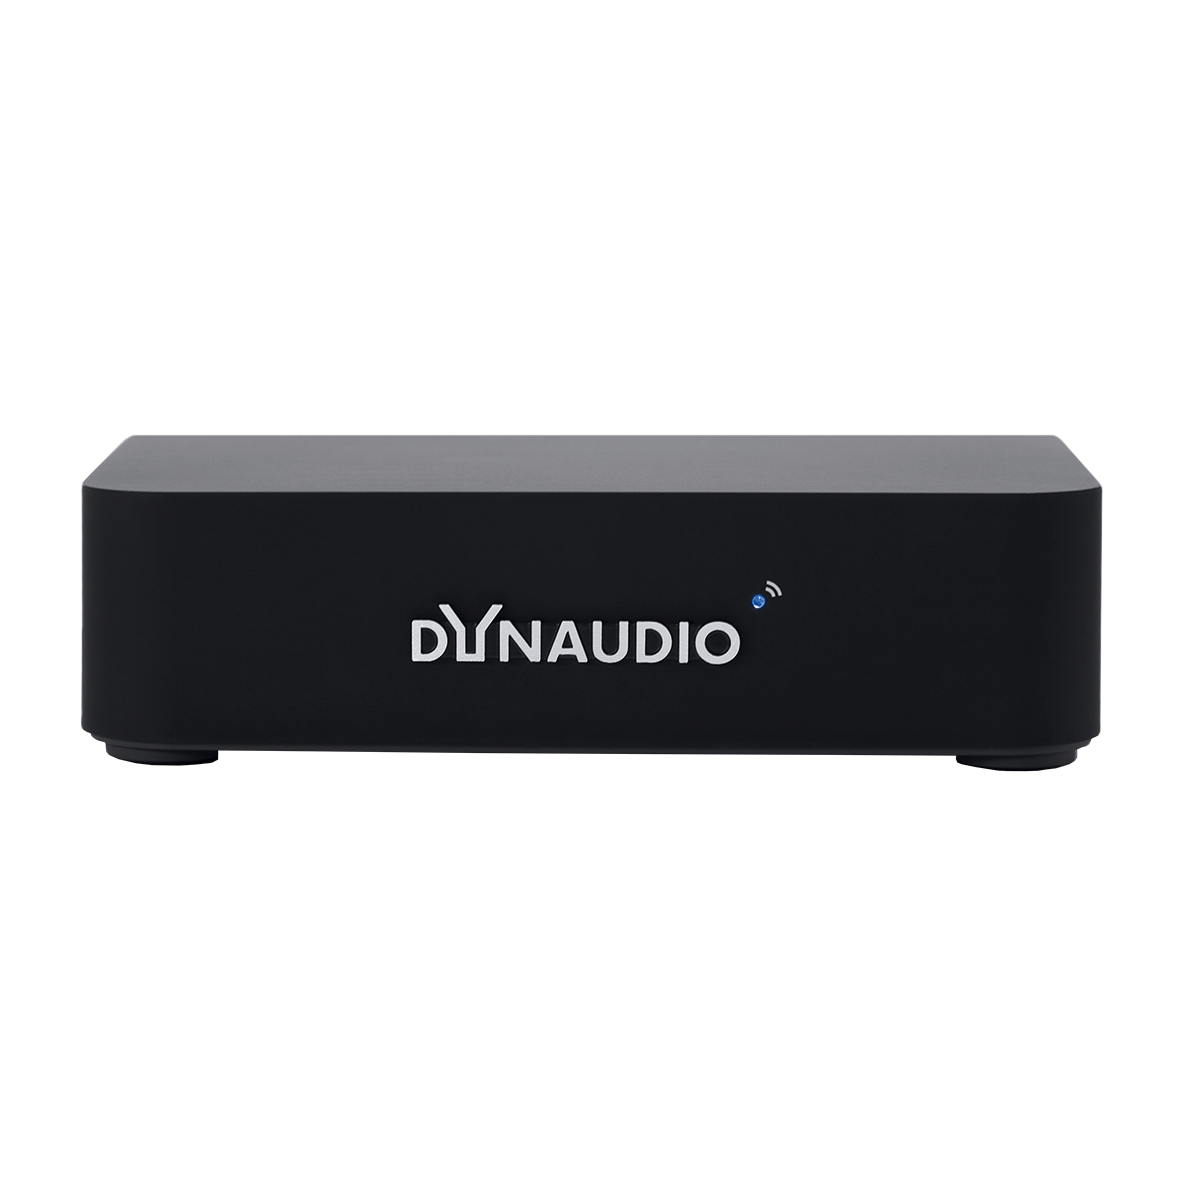 Altavoces amplificados Dynaudio XEO20 y XEO30 - Audio y Cine